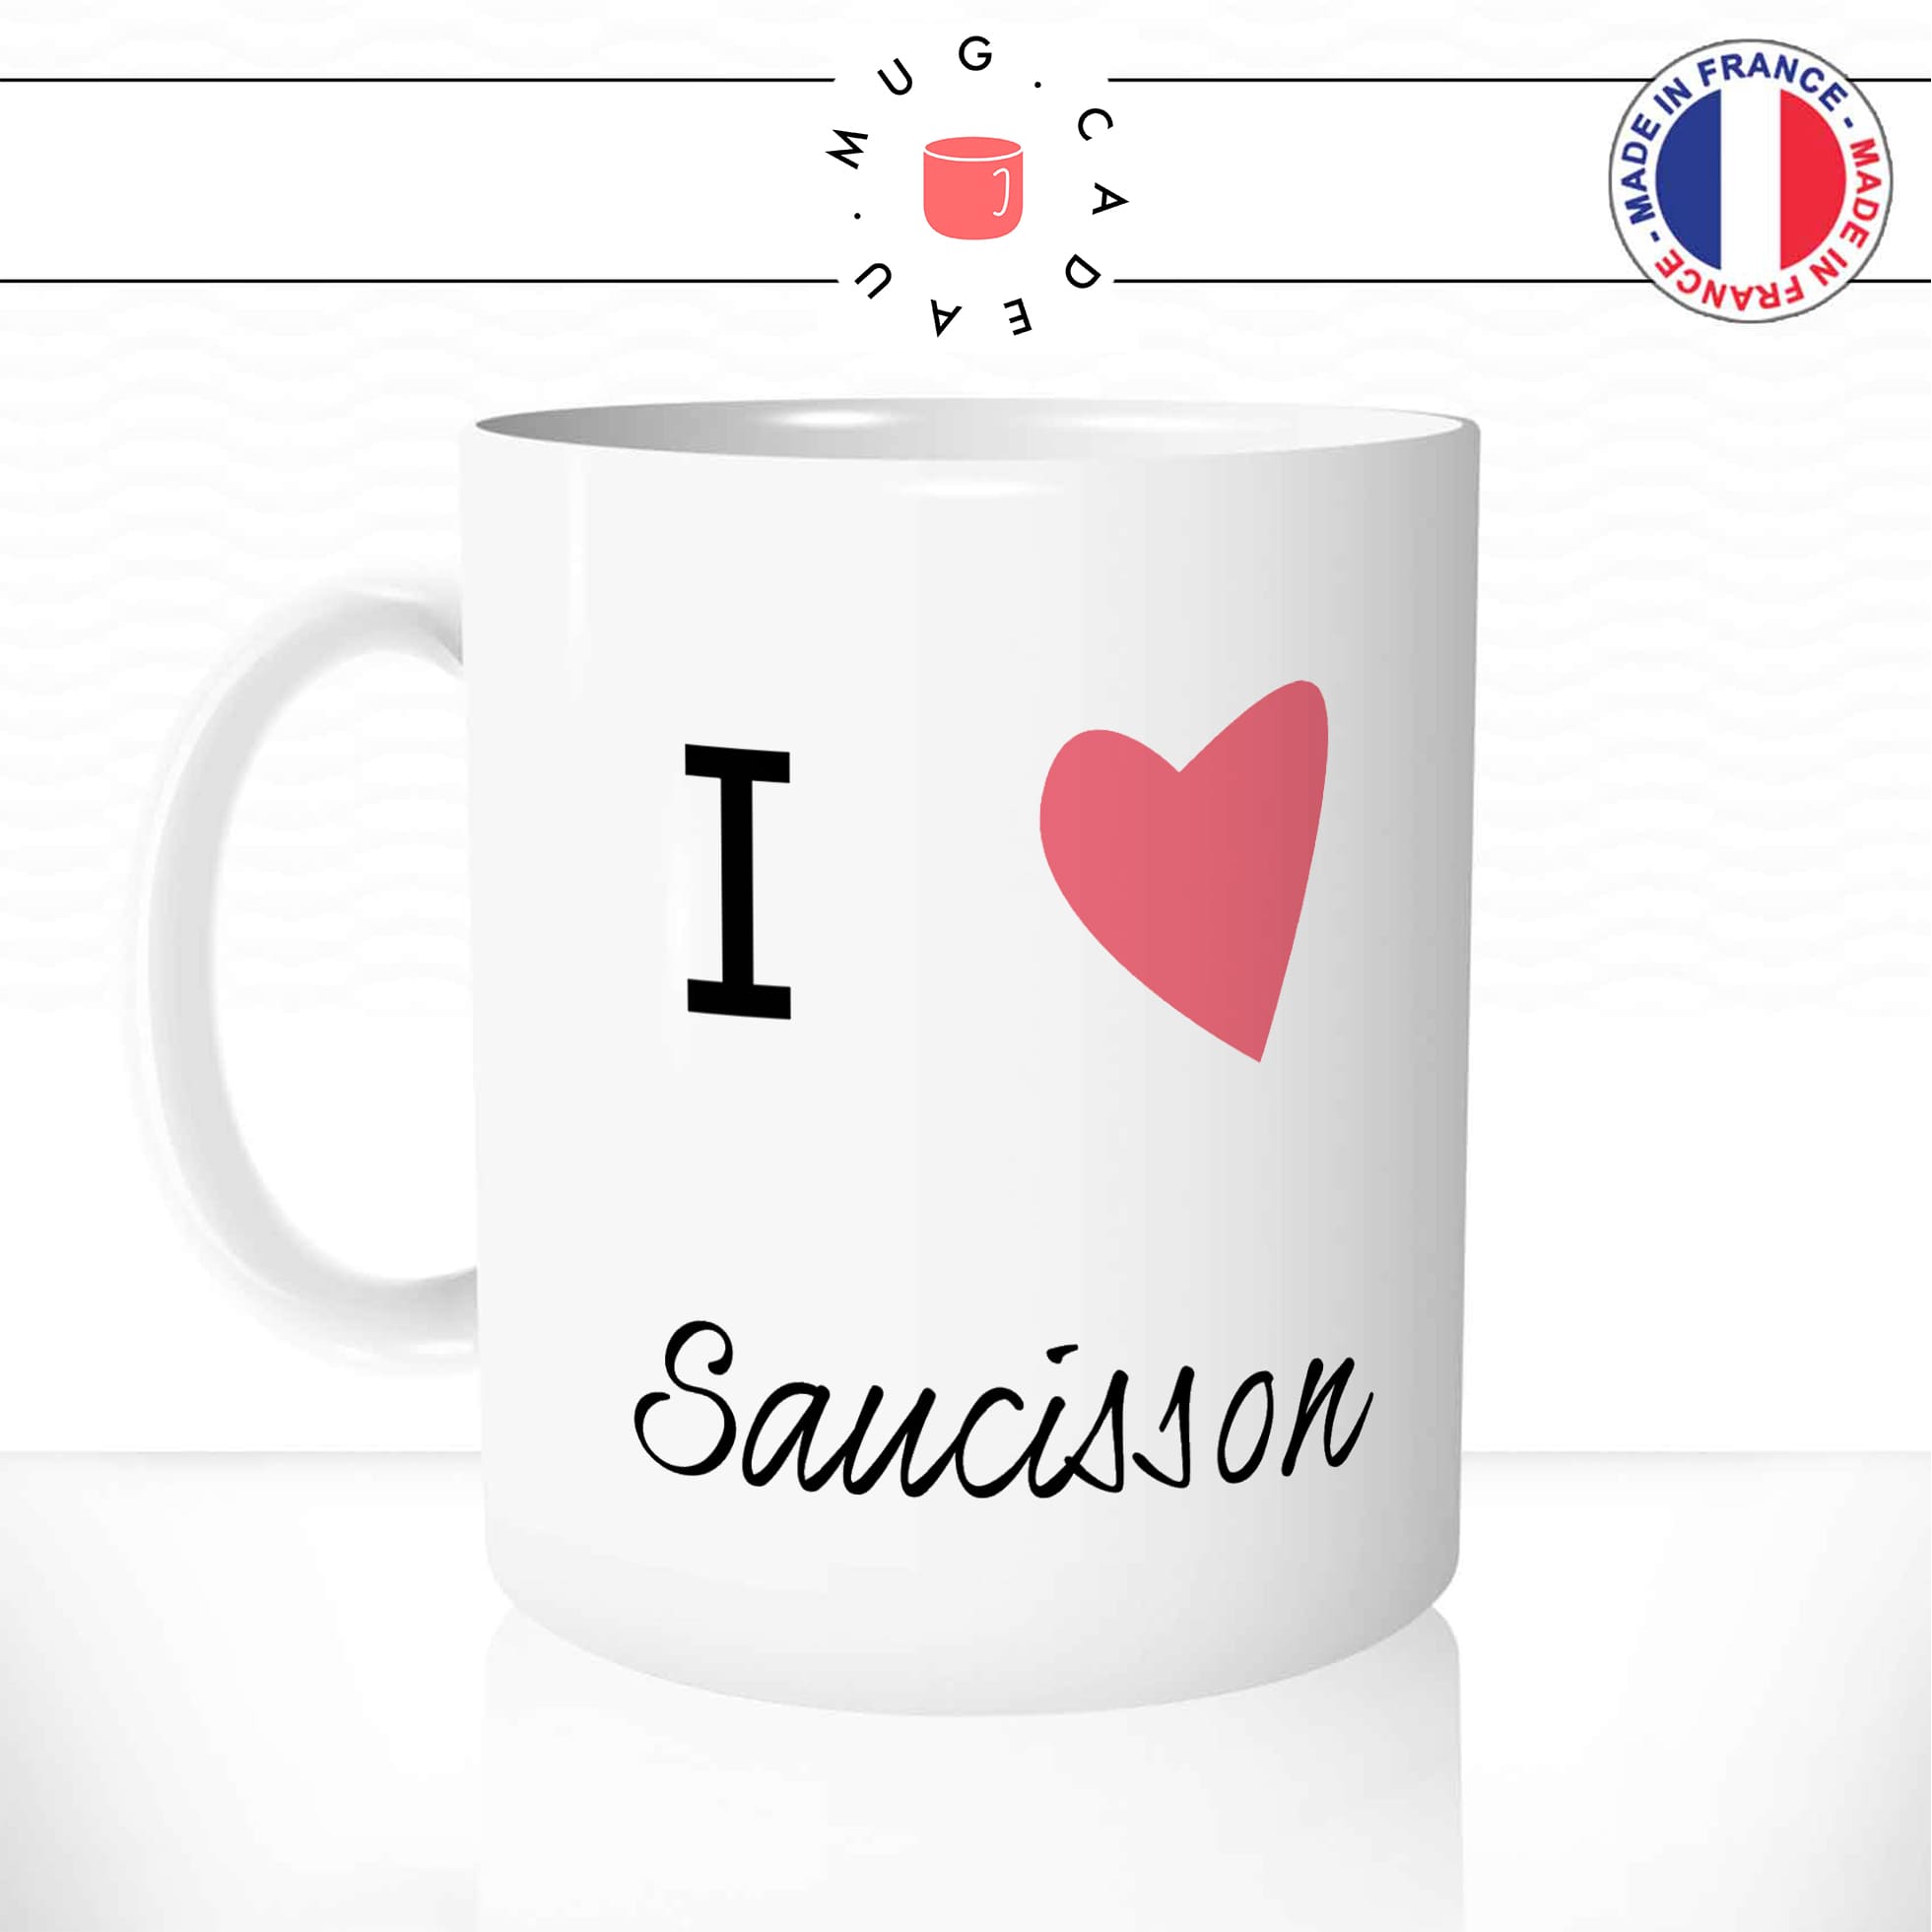 mug-tasse-blanc-unique-i-love-saucisson-charcuterie-cuisine-francaise-plat-france-homme-femme-humour-fun-cool-idée-cadeau-original